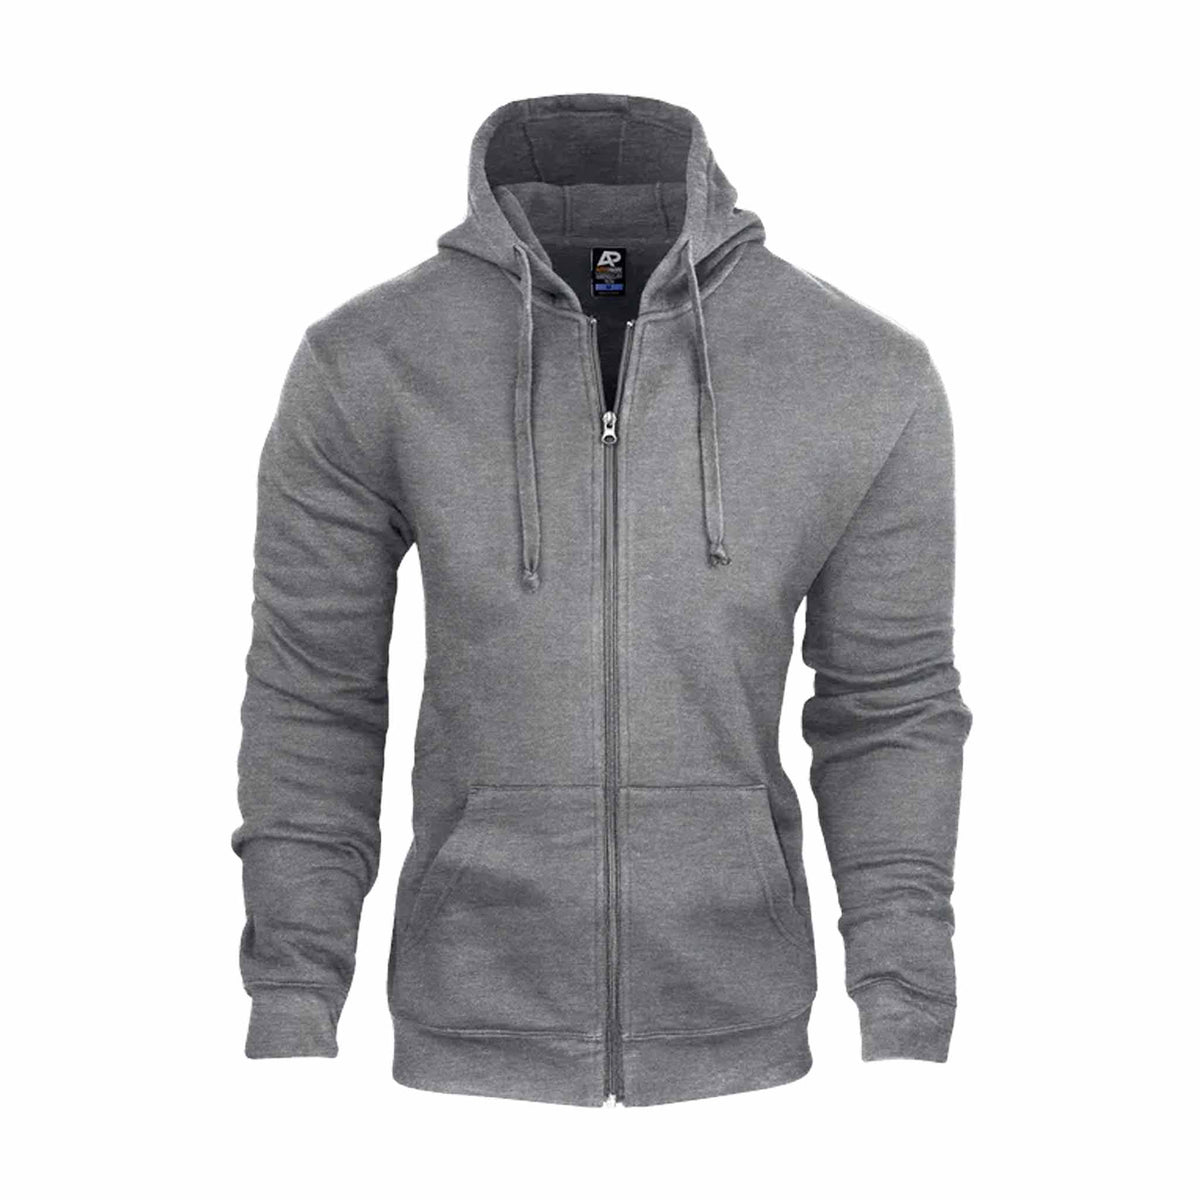 aussie pacific queenscliff zip mens hoodie in charcoal